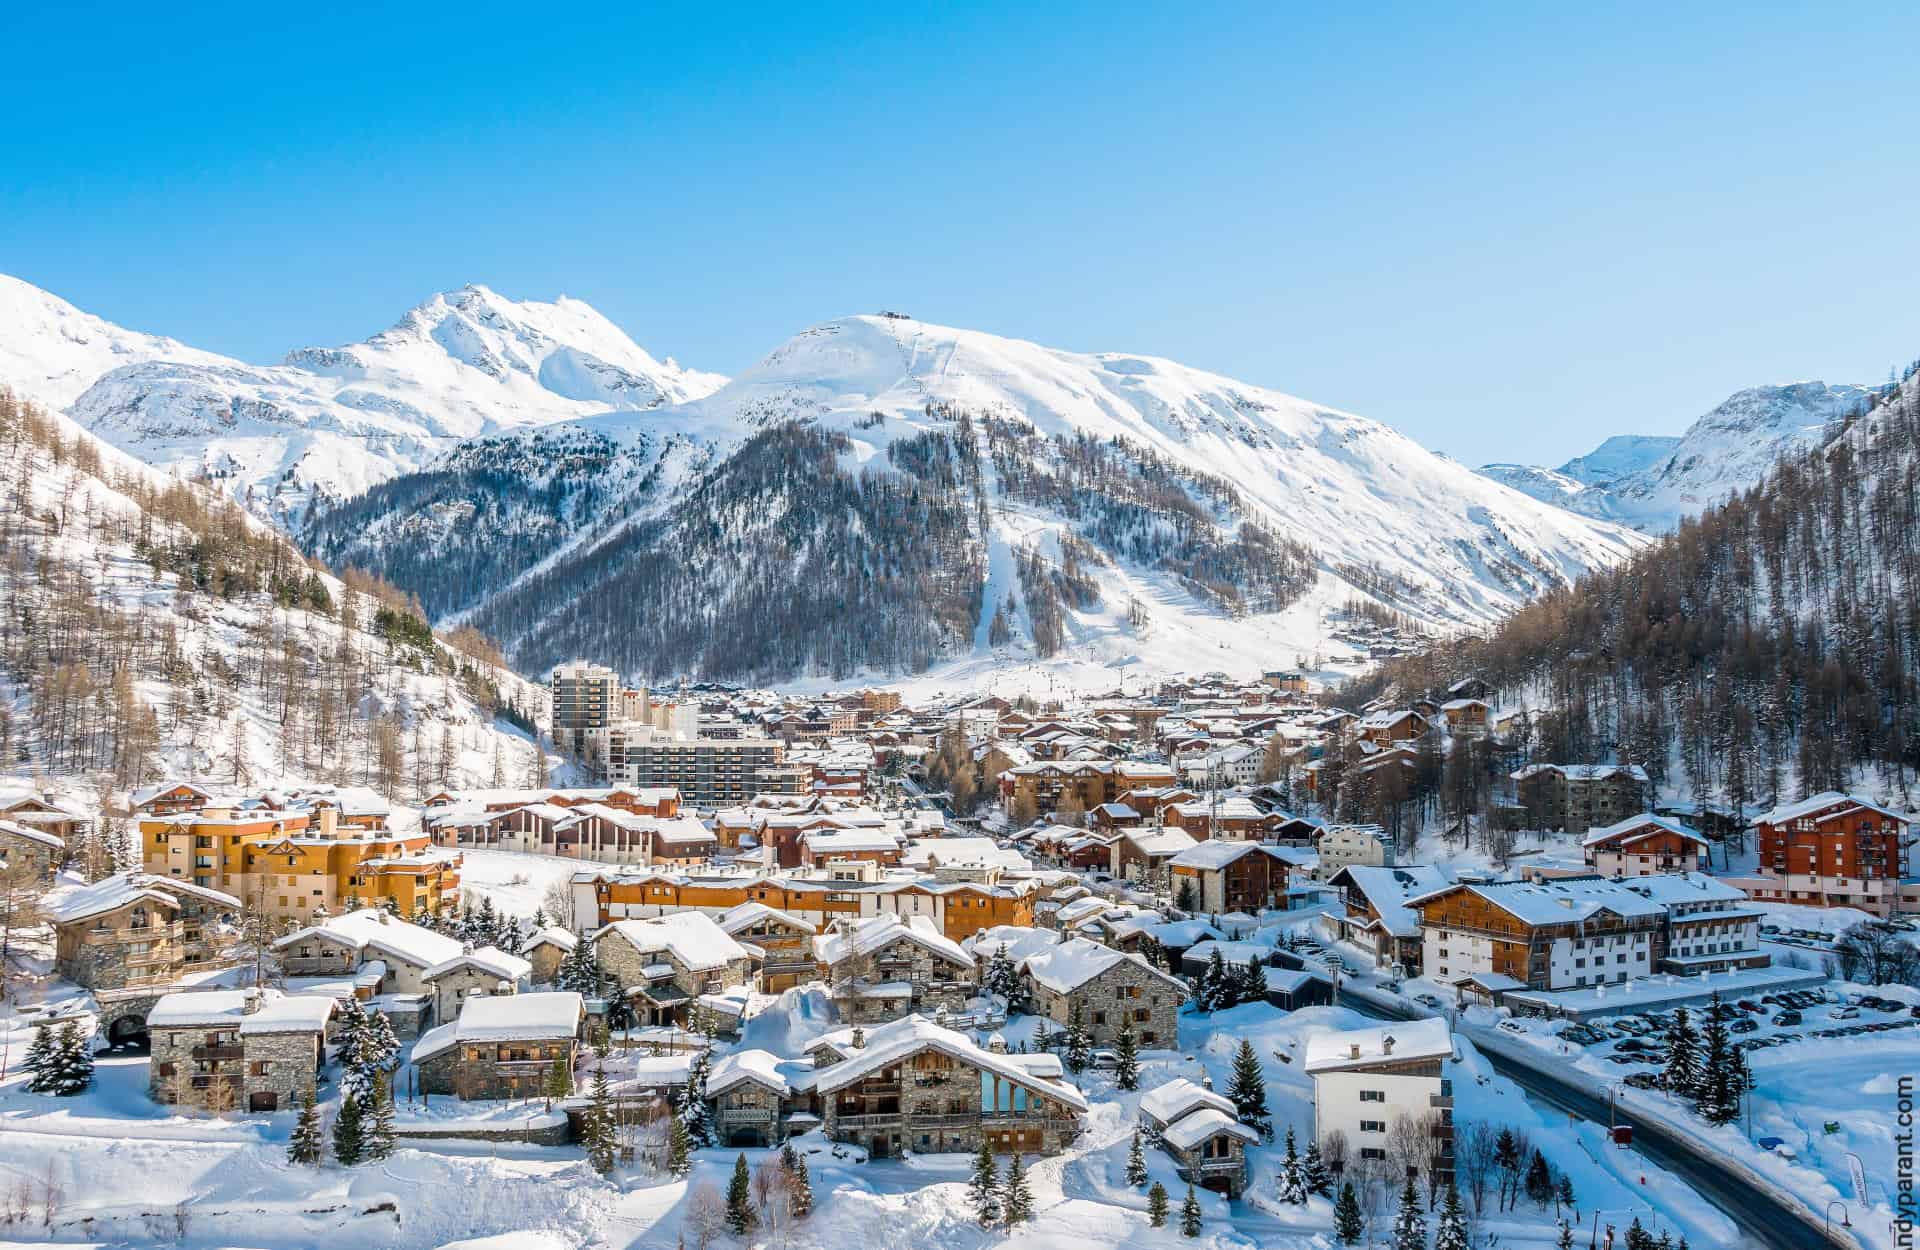 La station de ski de Val-d'Isère et son charmant village parmi les stations de ski de Savoie © ski-booking.com